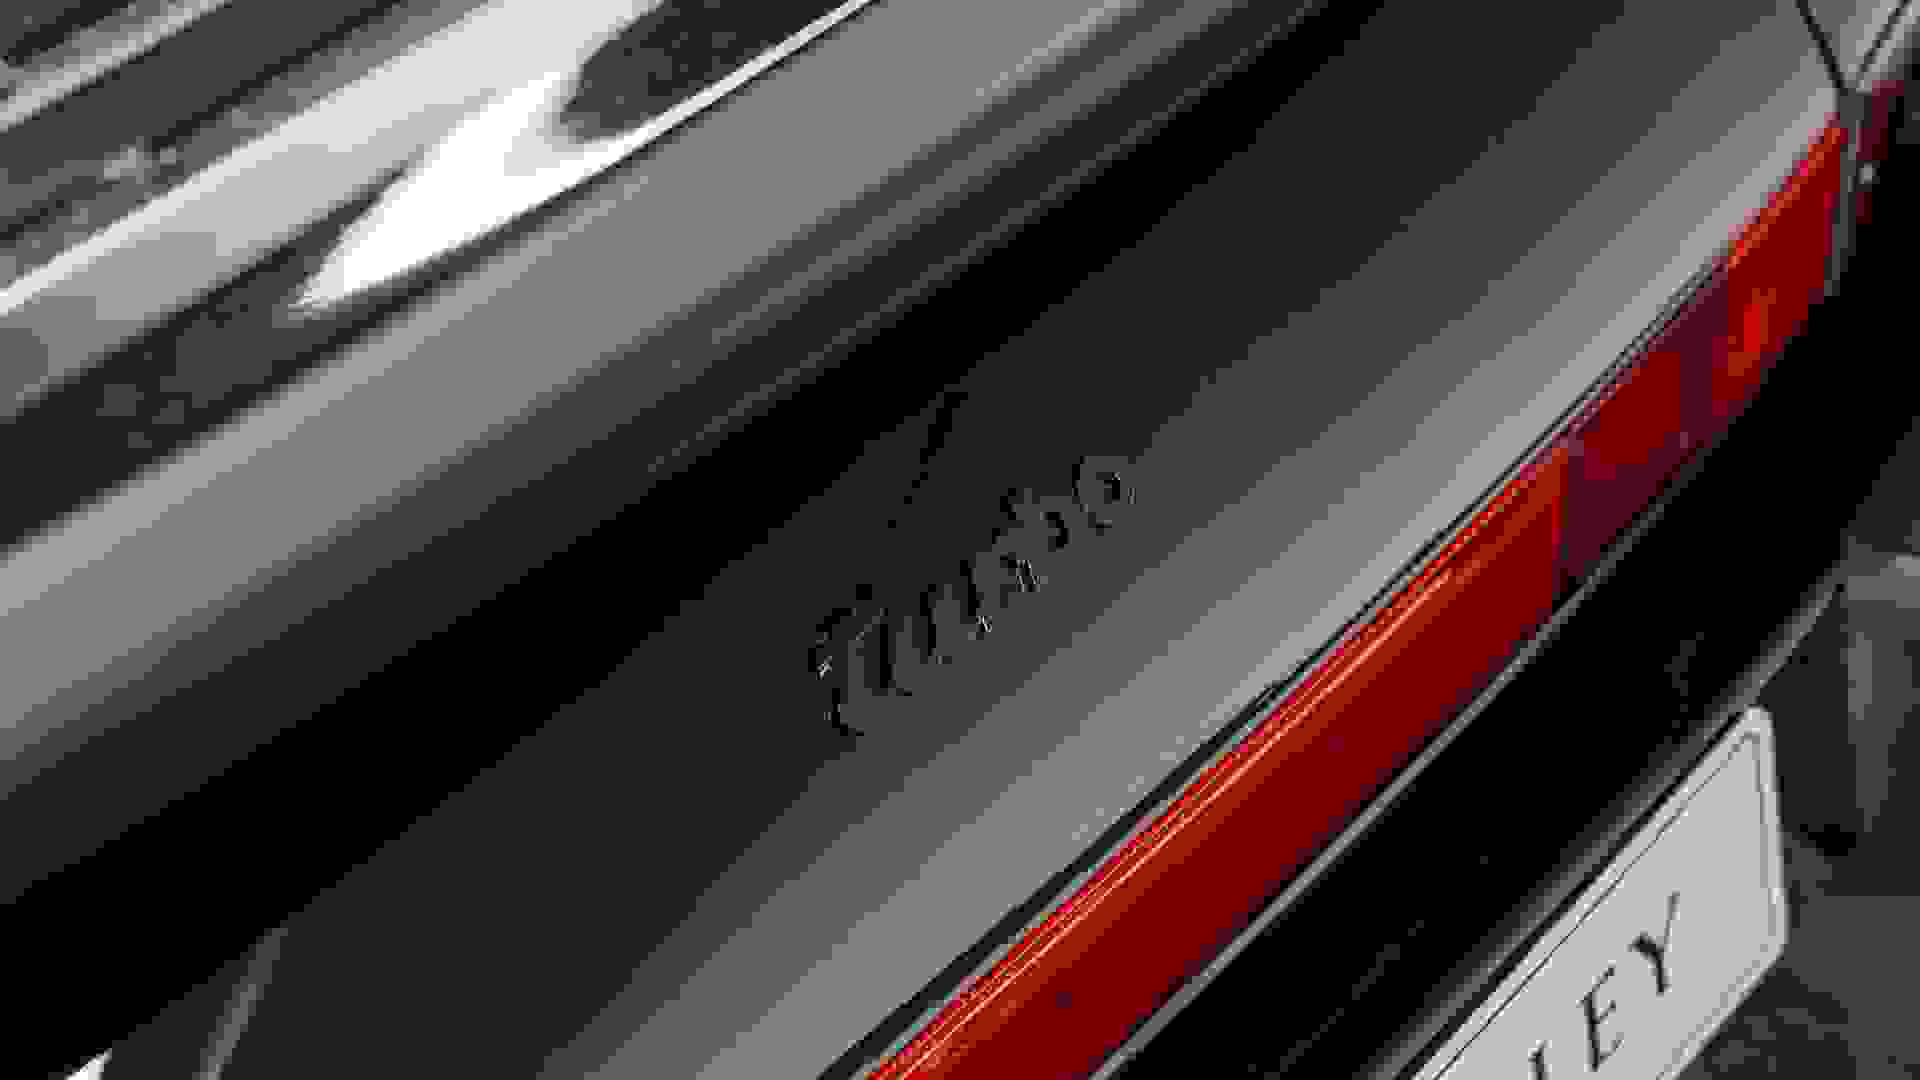 Porsche 930 Turbo Targa Photo 55a2aa56-b796-4aff-8cb4-f247c3b1f45b.jpg